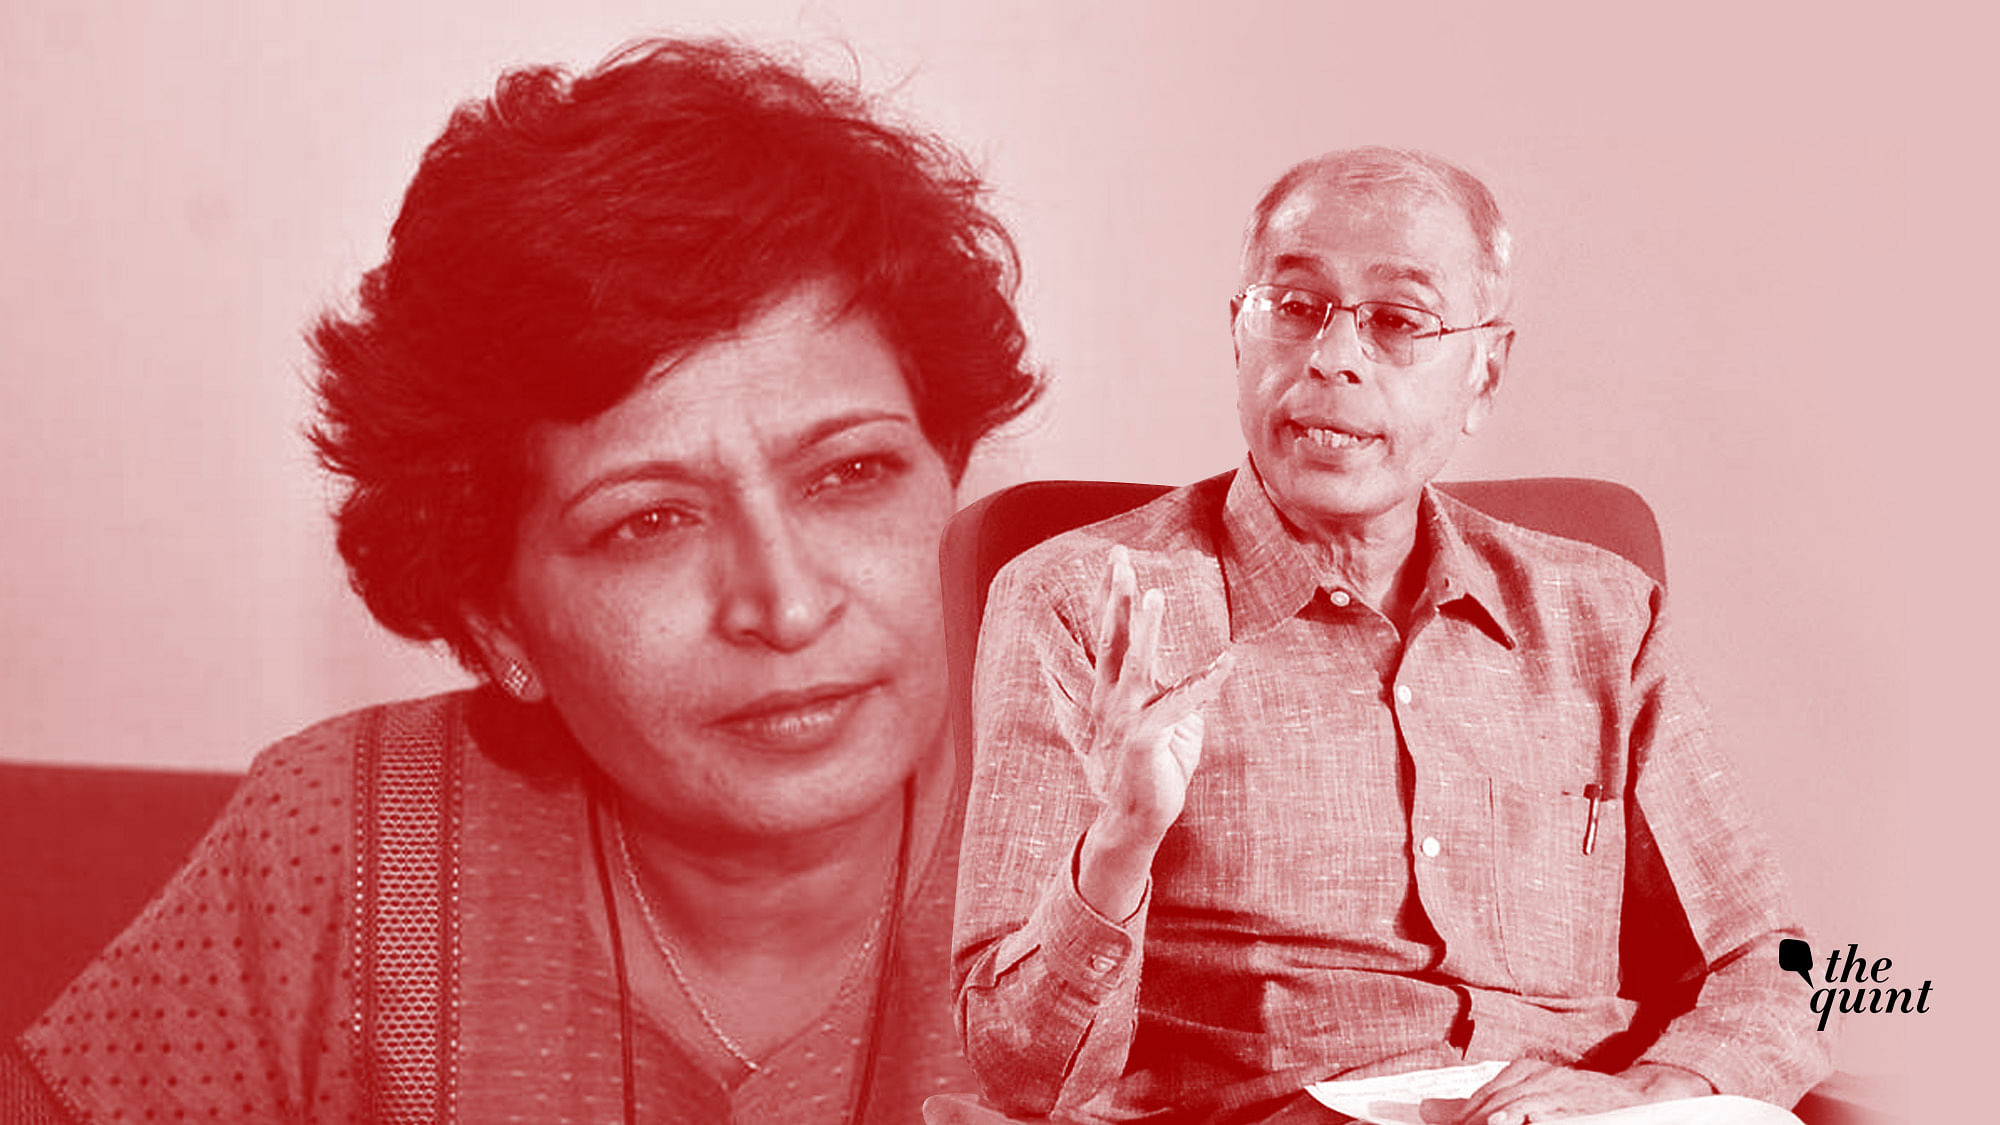 Image of Gauri Lankesh and Narendra Dabholkar used for representational purposes.